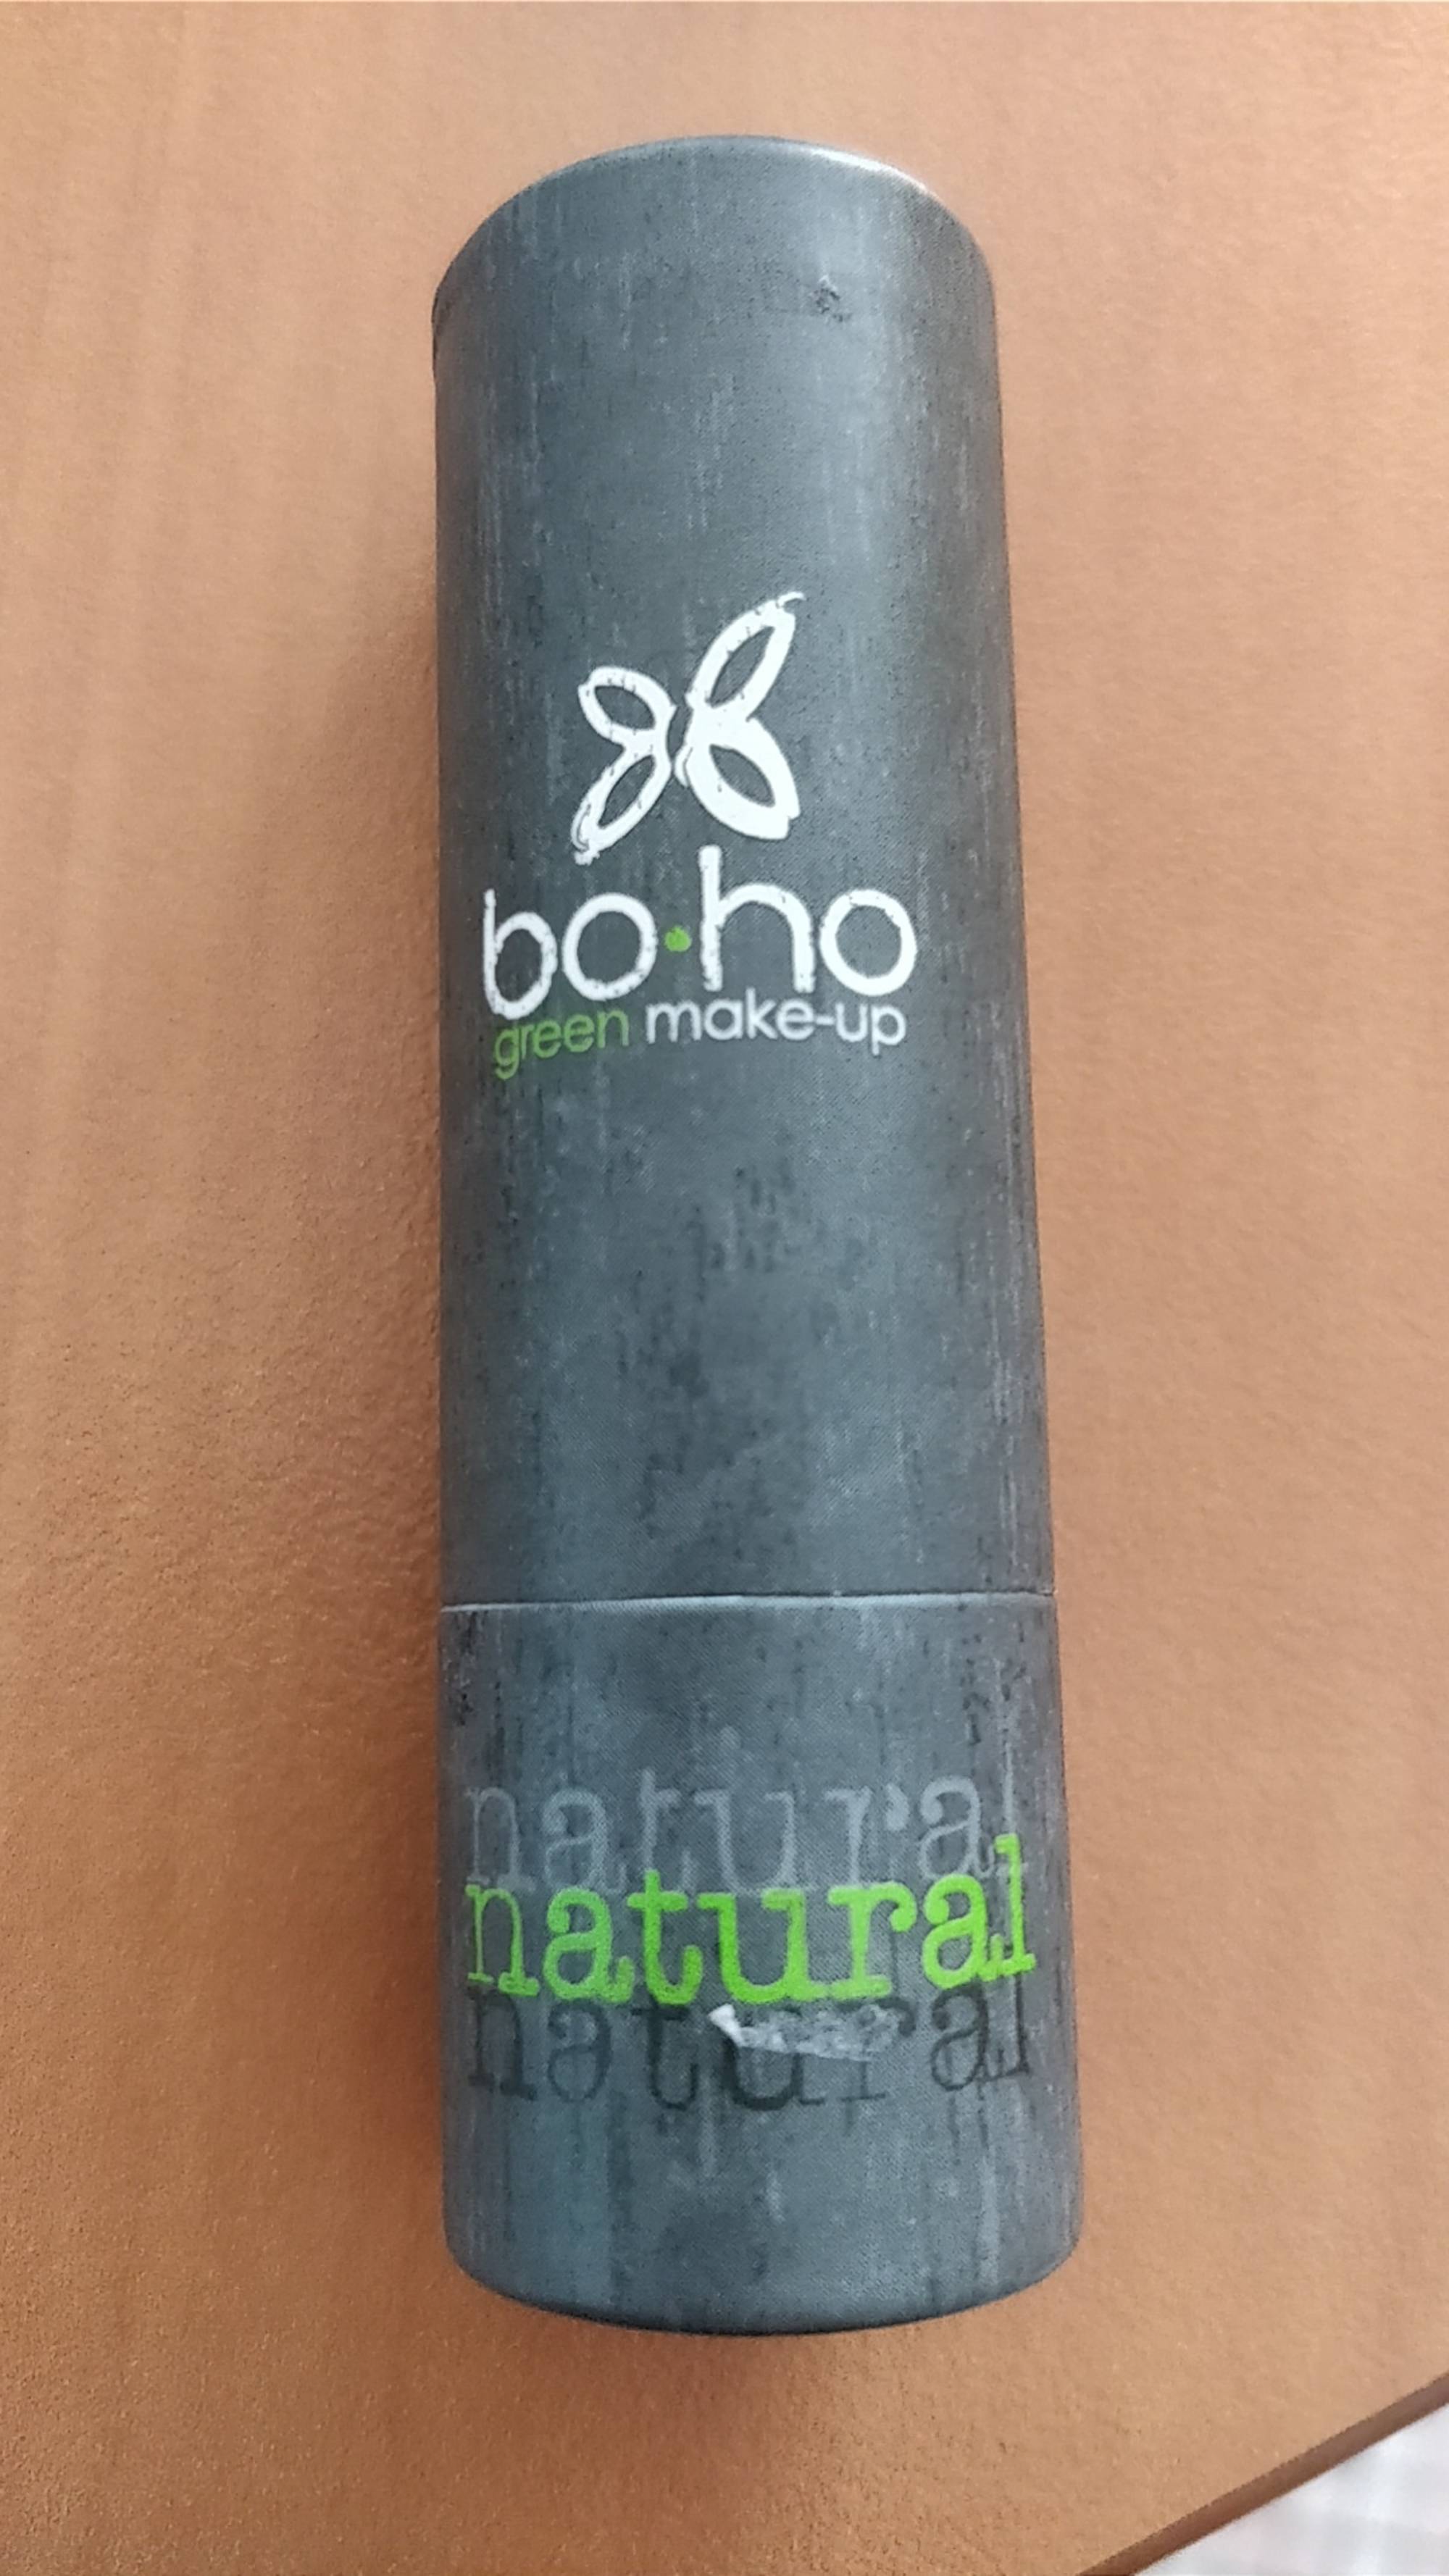 BOHO - Green make-up Natural